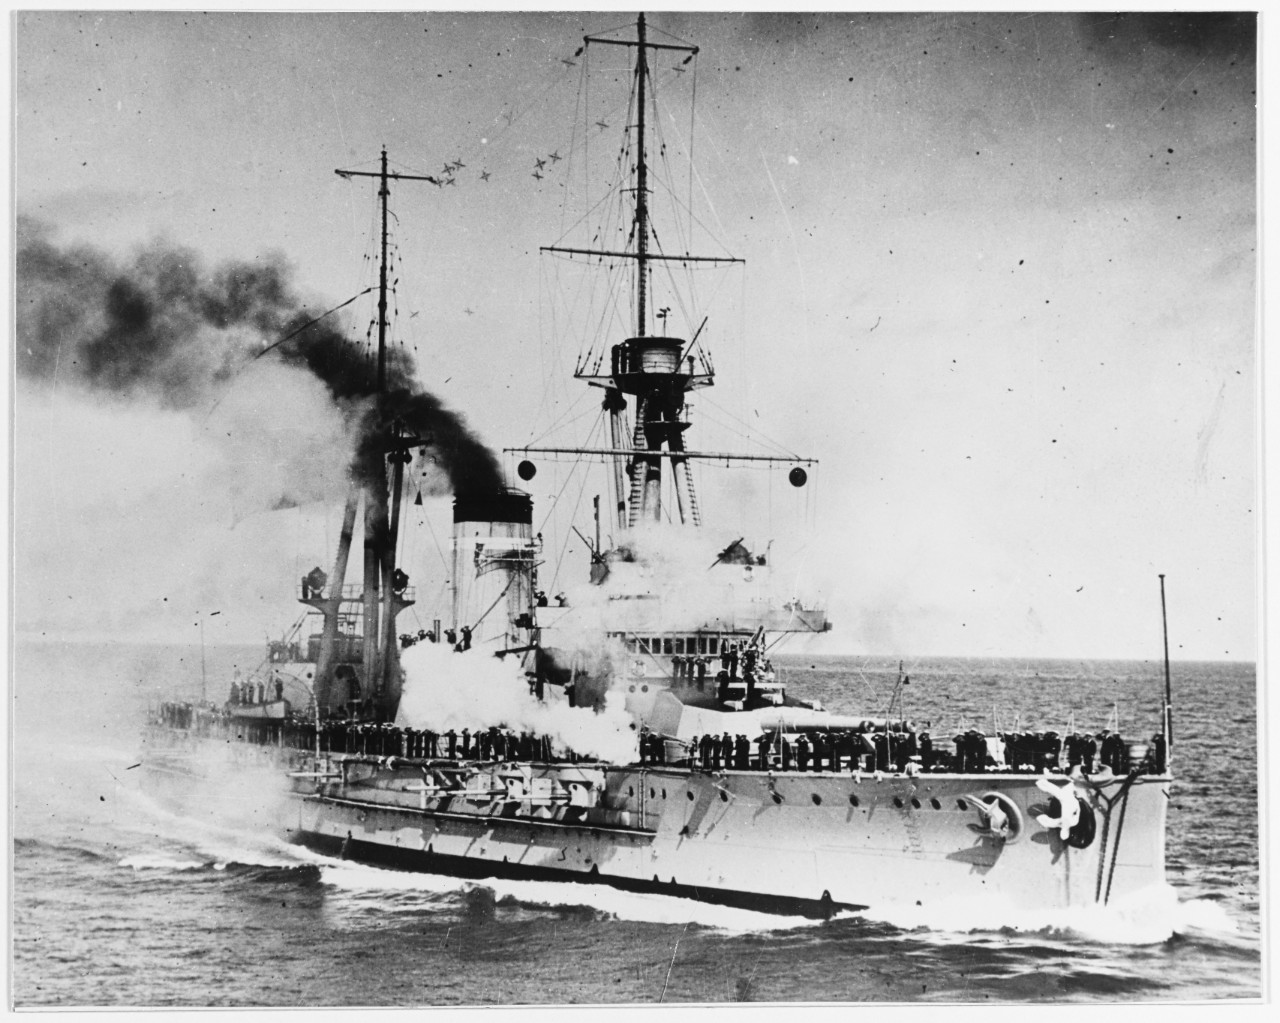 ESPANA (Spanish battleship, 1913-1937)